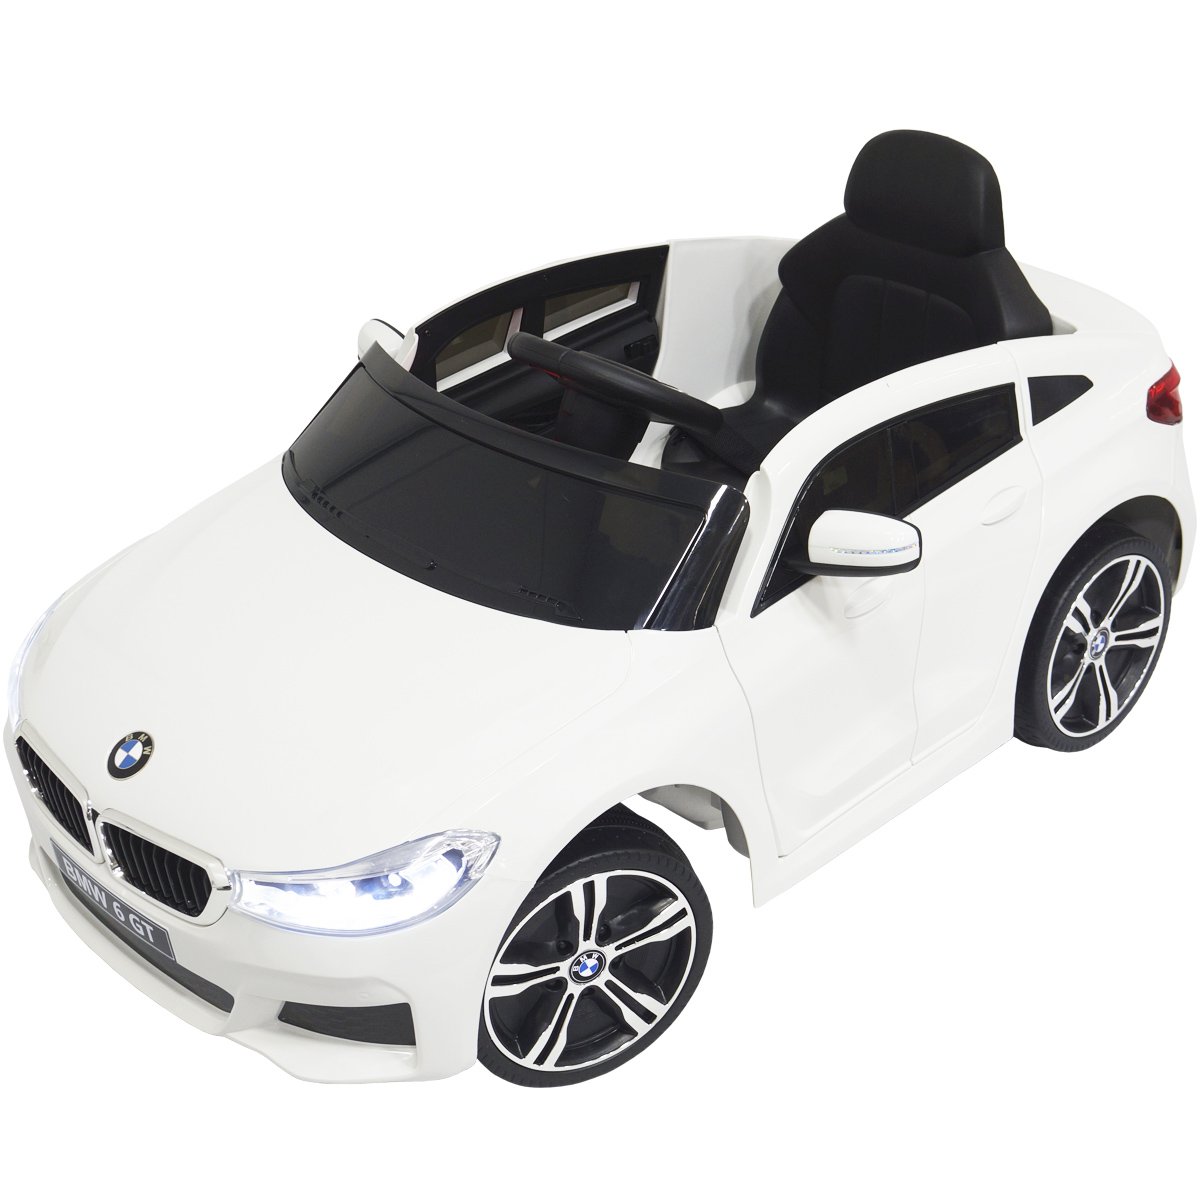 Carro Eletrico Zippy Toys BMW i8 Coupe 12V com Controle Branco - Maçã Verde  Baby